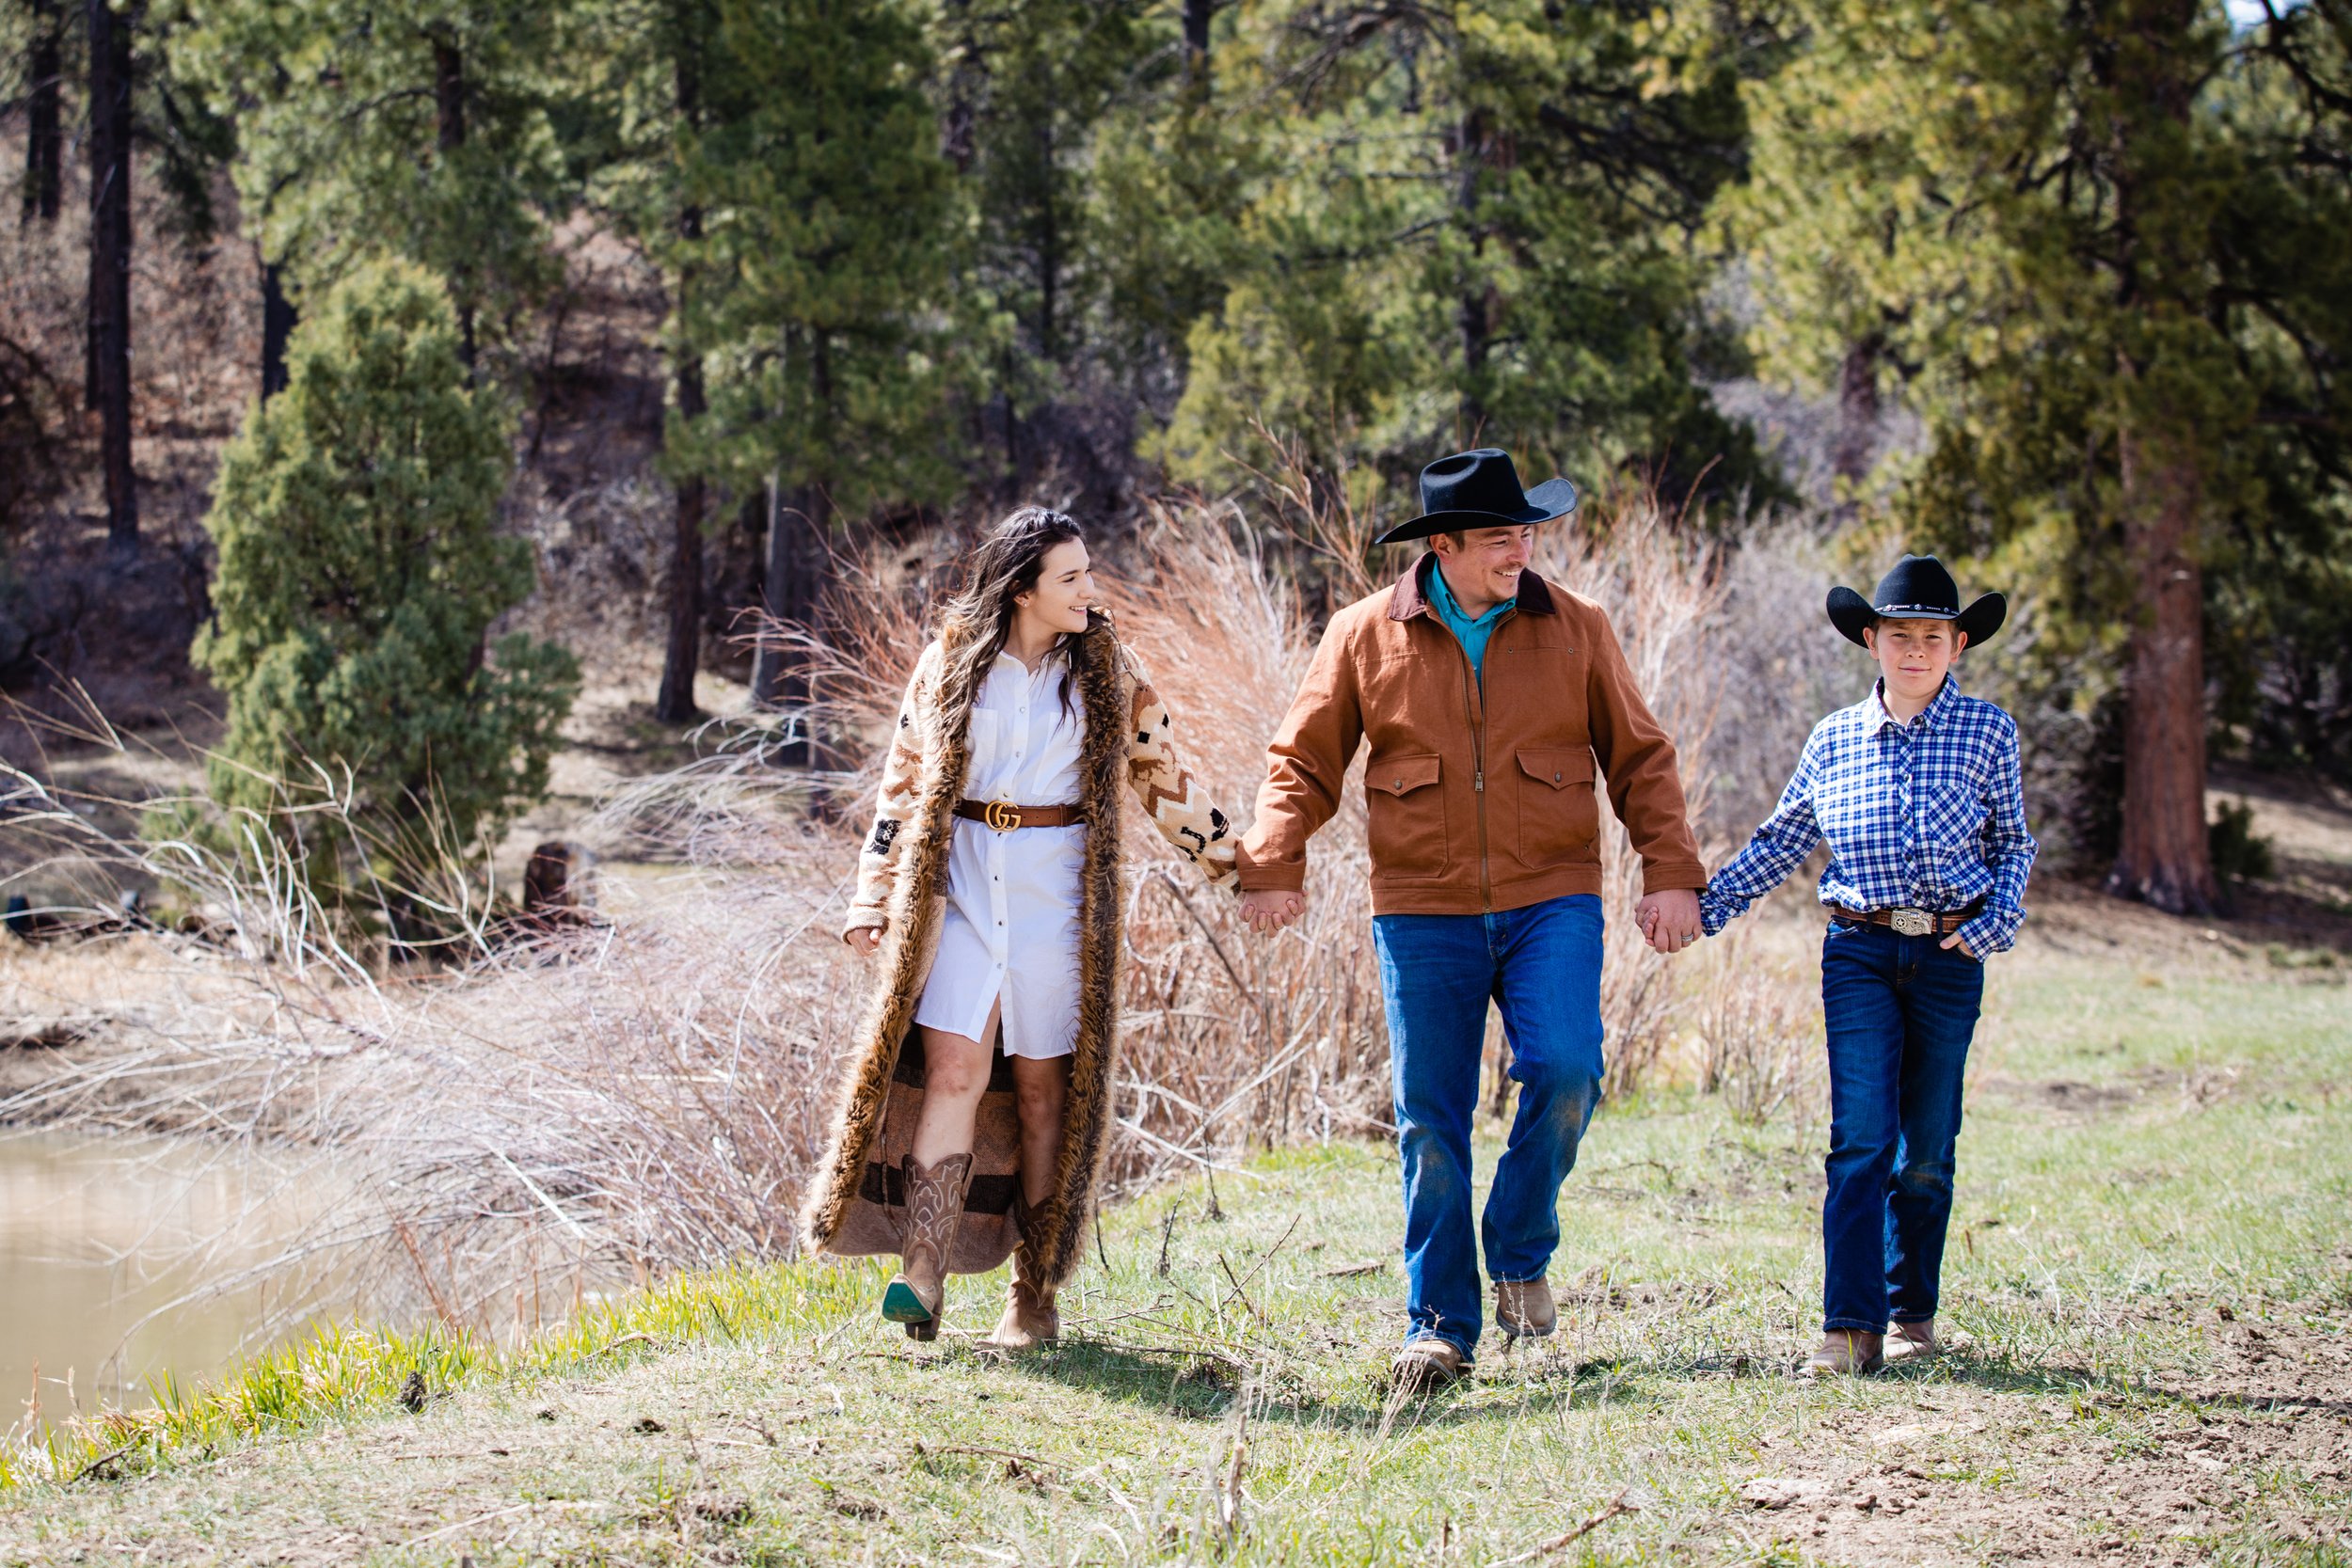  Durango Colorado Mancos Colorado Horse Ranch Cowboy enagement photo session 